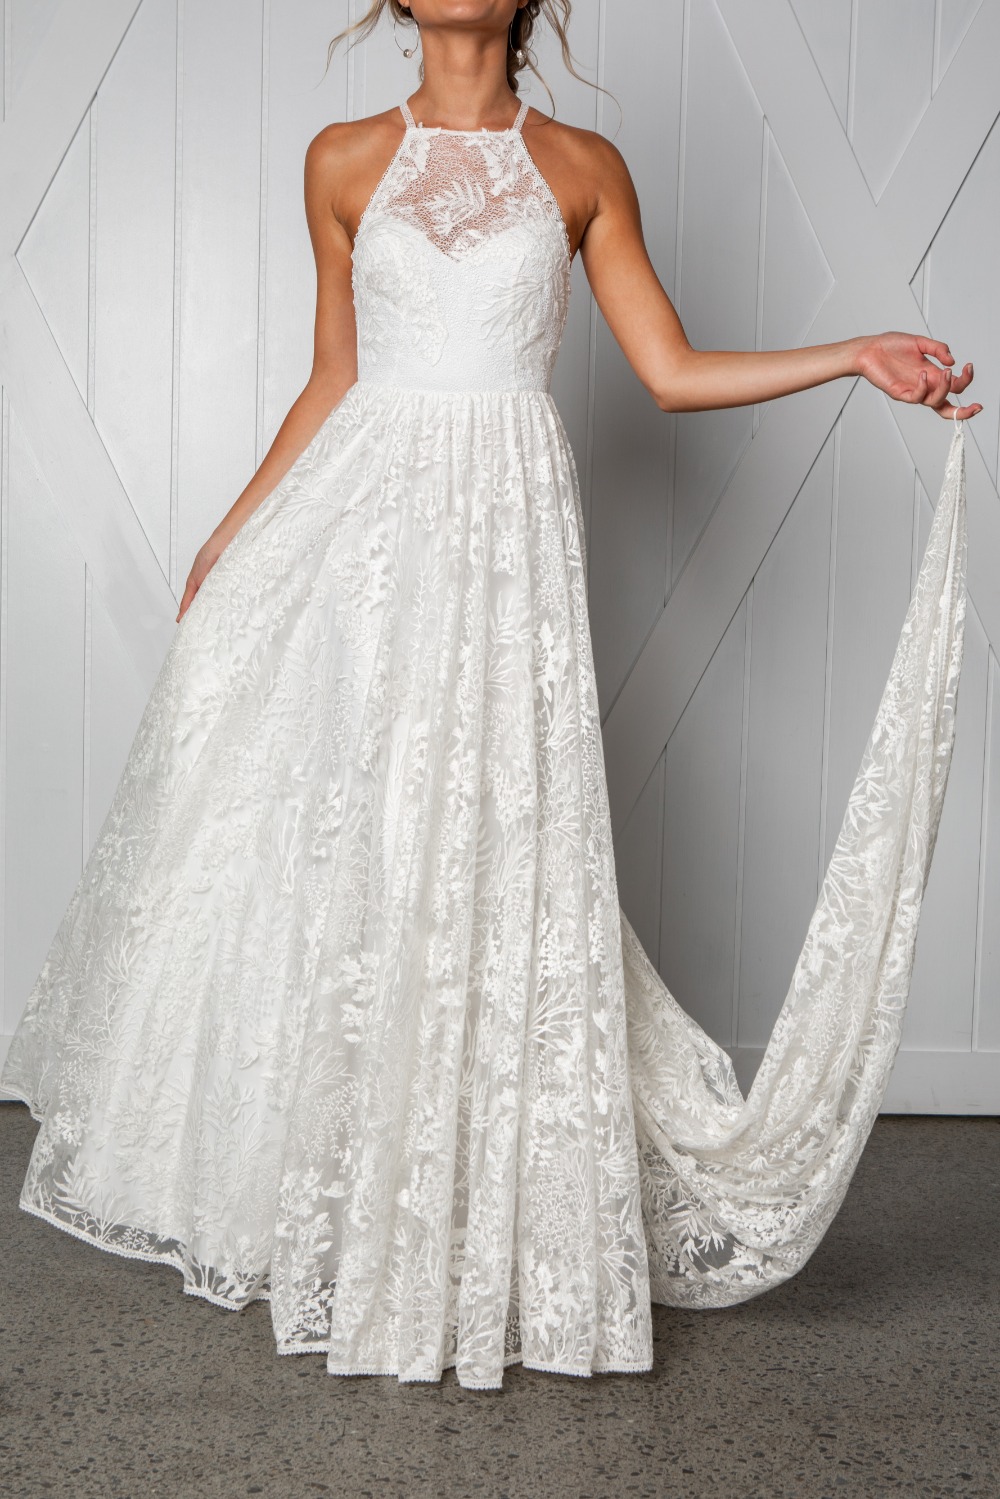 harri-wedding-dress-by-grace-loves-lace-1